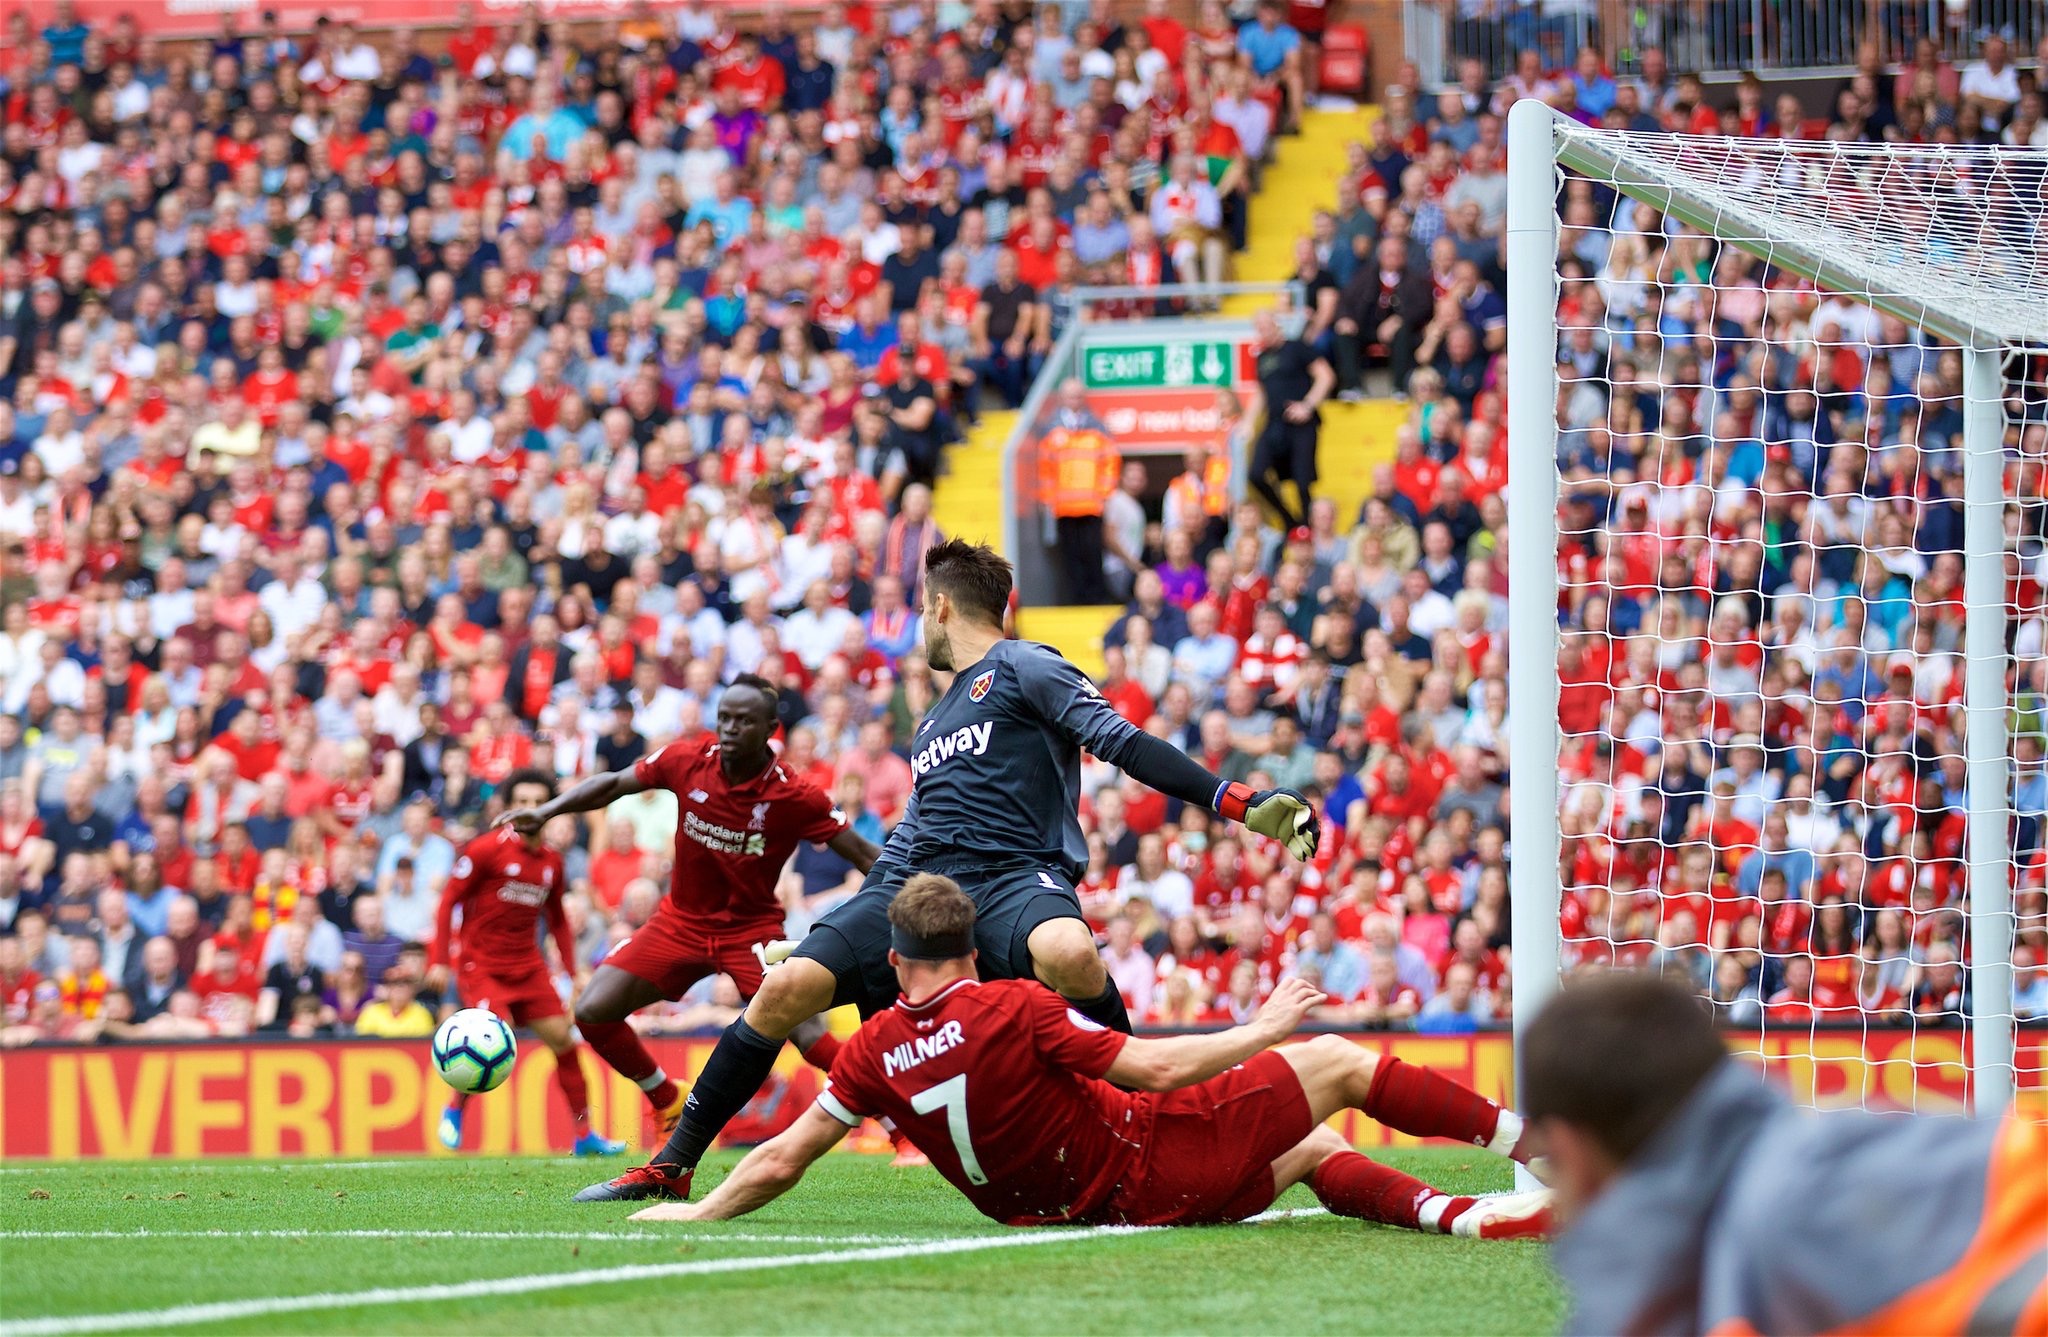 #PremierLeague - Liverpool démarre fort en écrasant West Ham (4-0)